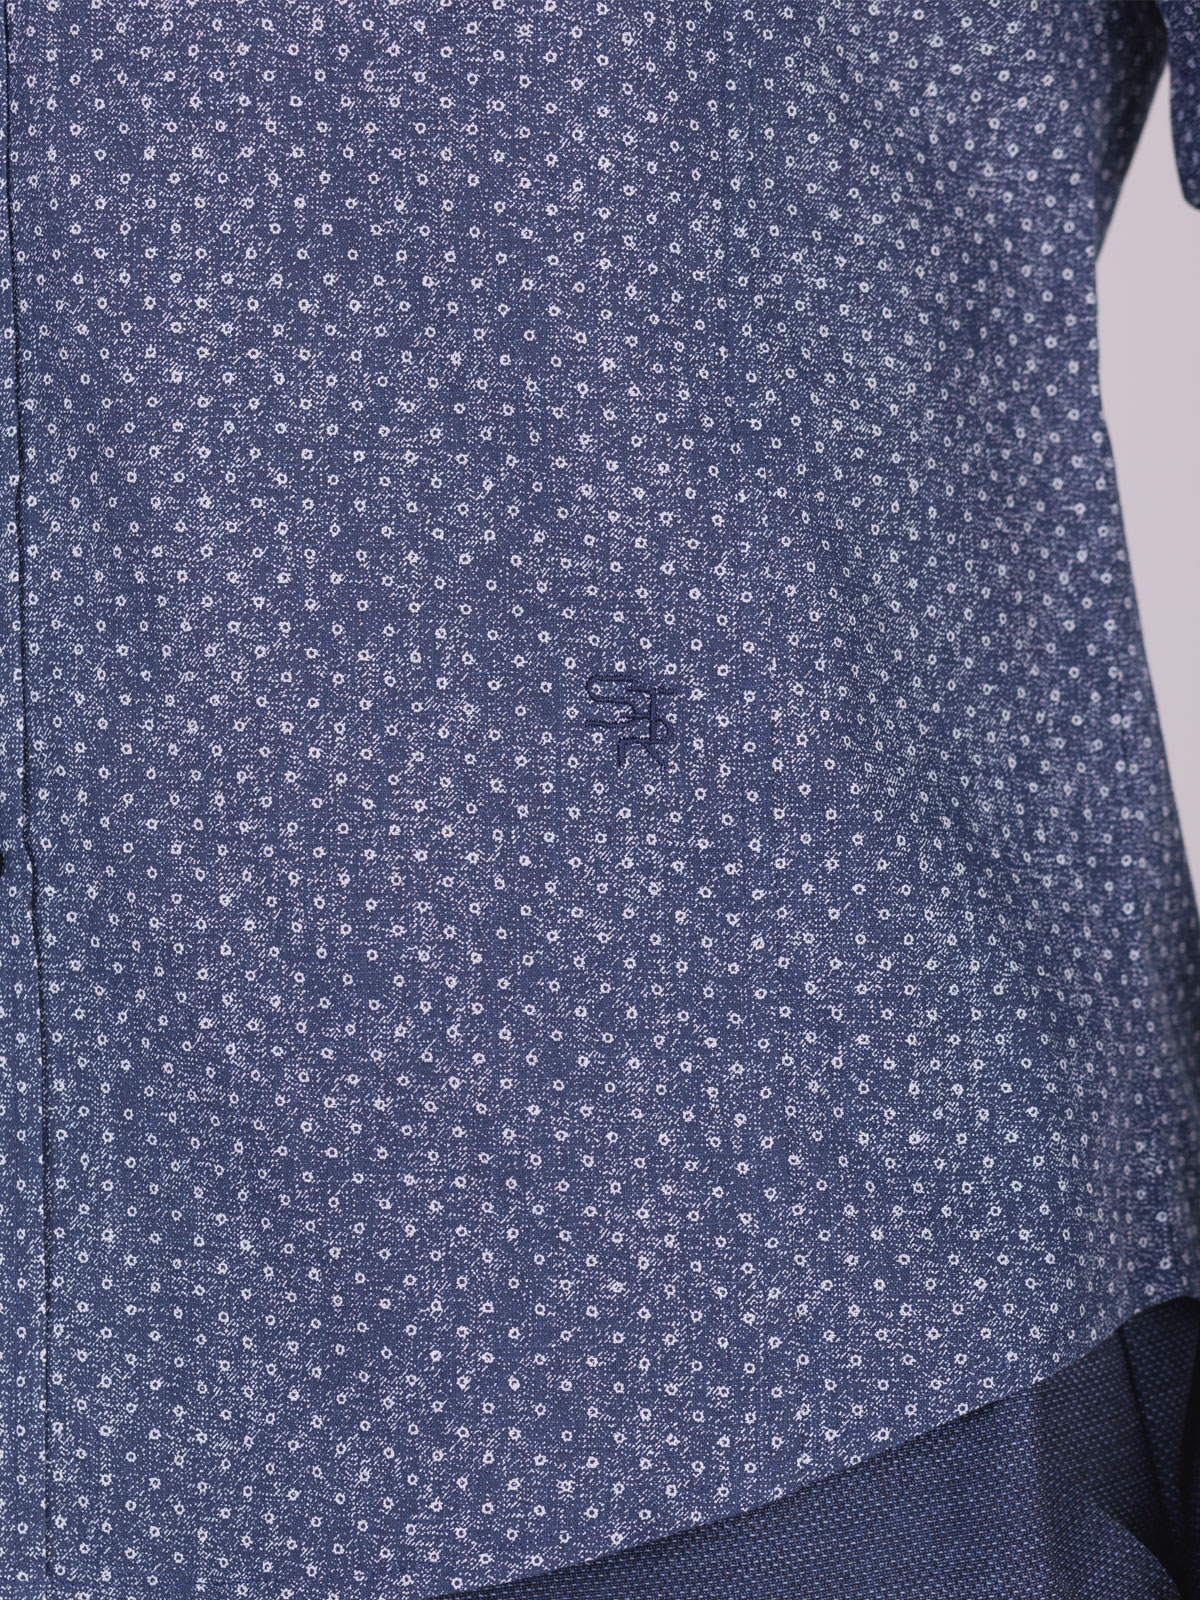 Ανδρικό πουκάμισο με φλοράλ σχέδια - 21573 € 44.43 img3